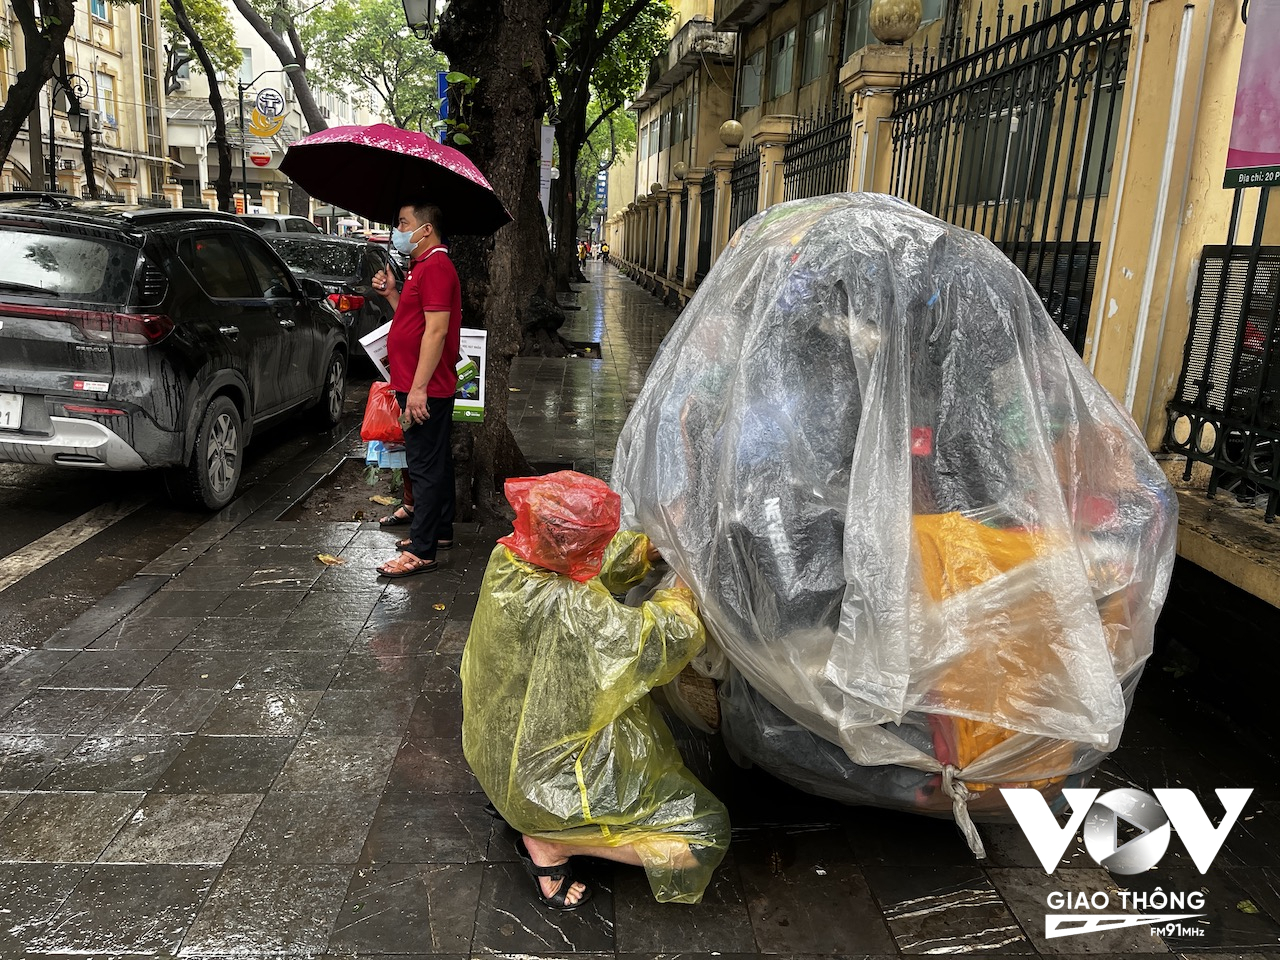 Và đến gần trưa thì chuyển thành mưa phùn. Những người bán hàng trên phố phải trang bị áo mưa, nếu không hàng hoá sẽ ướt hết. Dù vậy độ ẩm trong không khí quá lớn nên biện pháp này nhiều khi không ăn thua